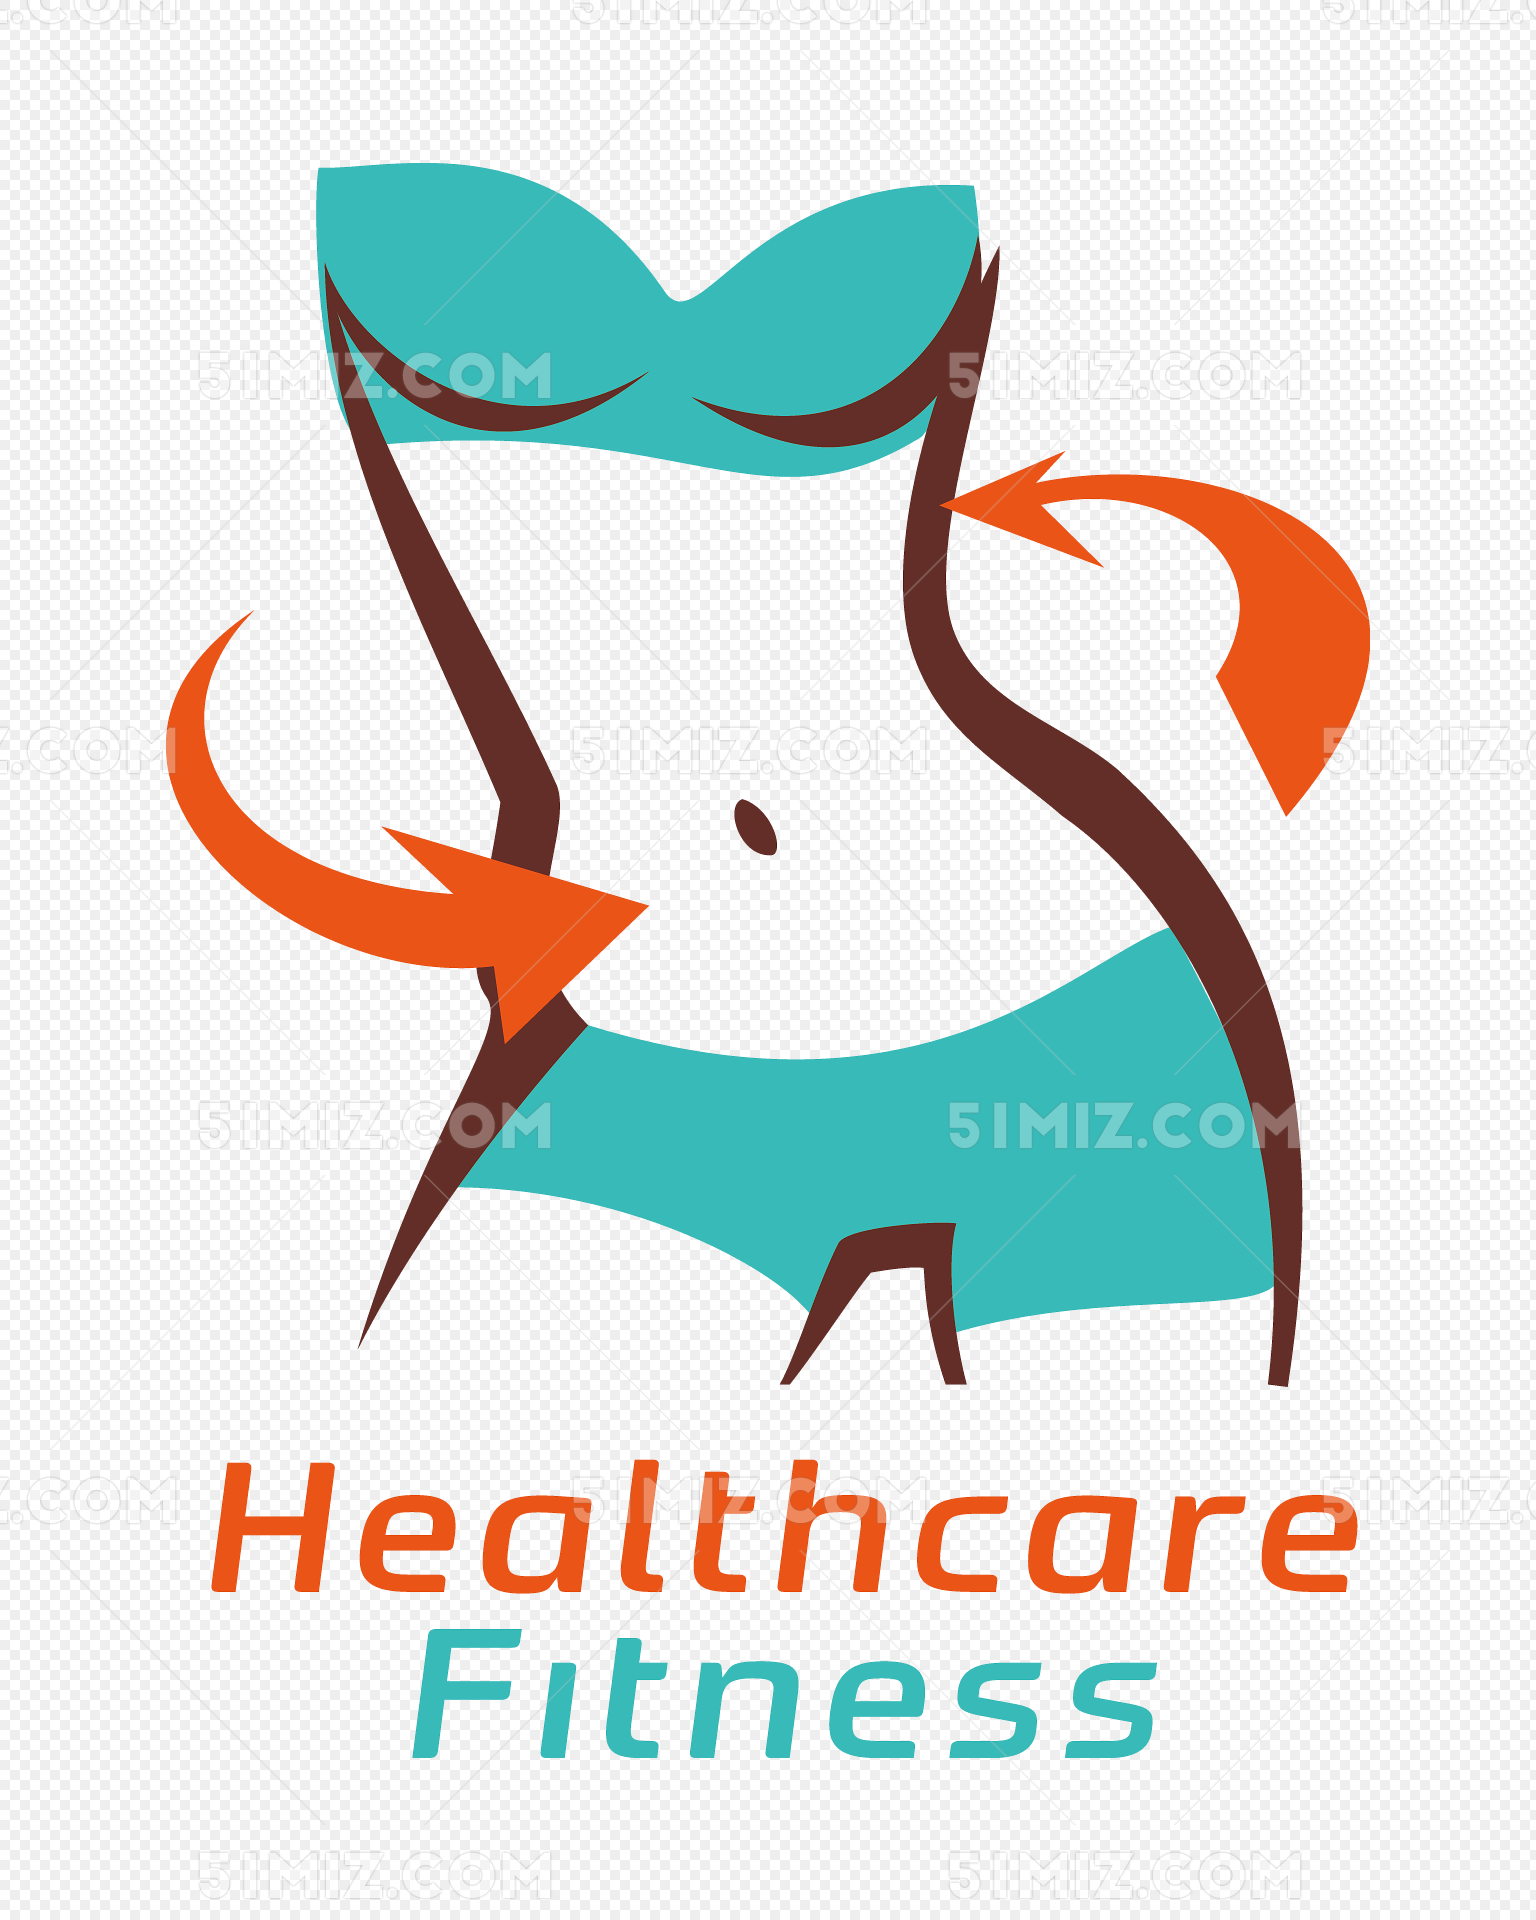 痩せている動き脂肪女性は、道から出ますイラスト画像とPNGフリー素材透過の無料ダウンロード - Pngtree